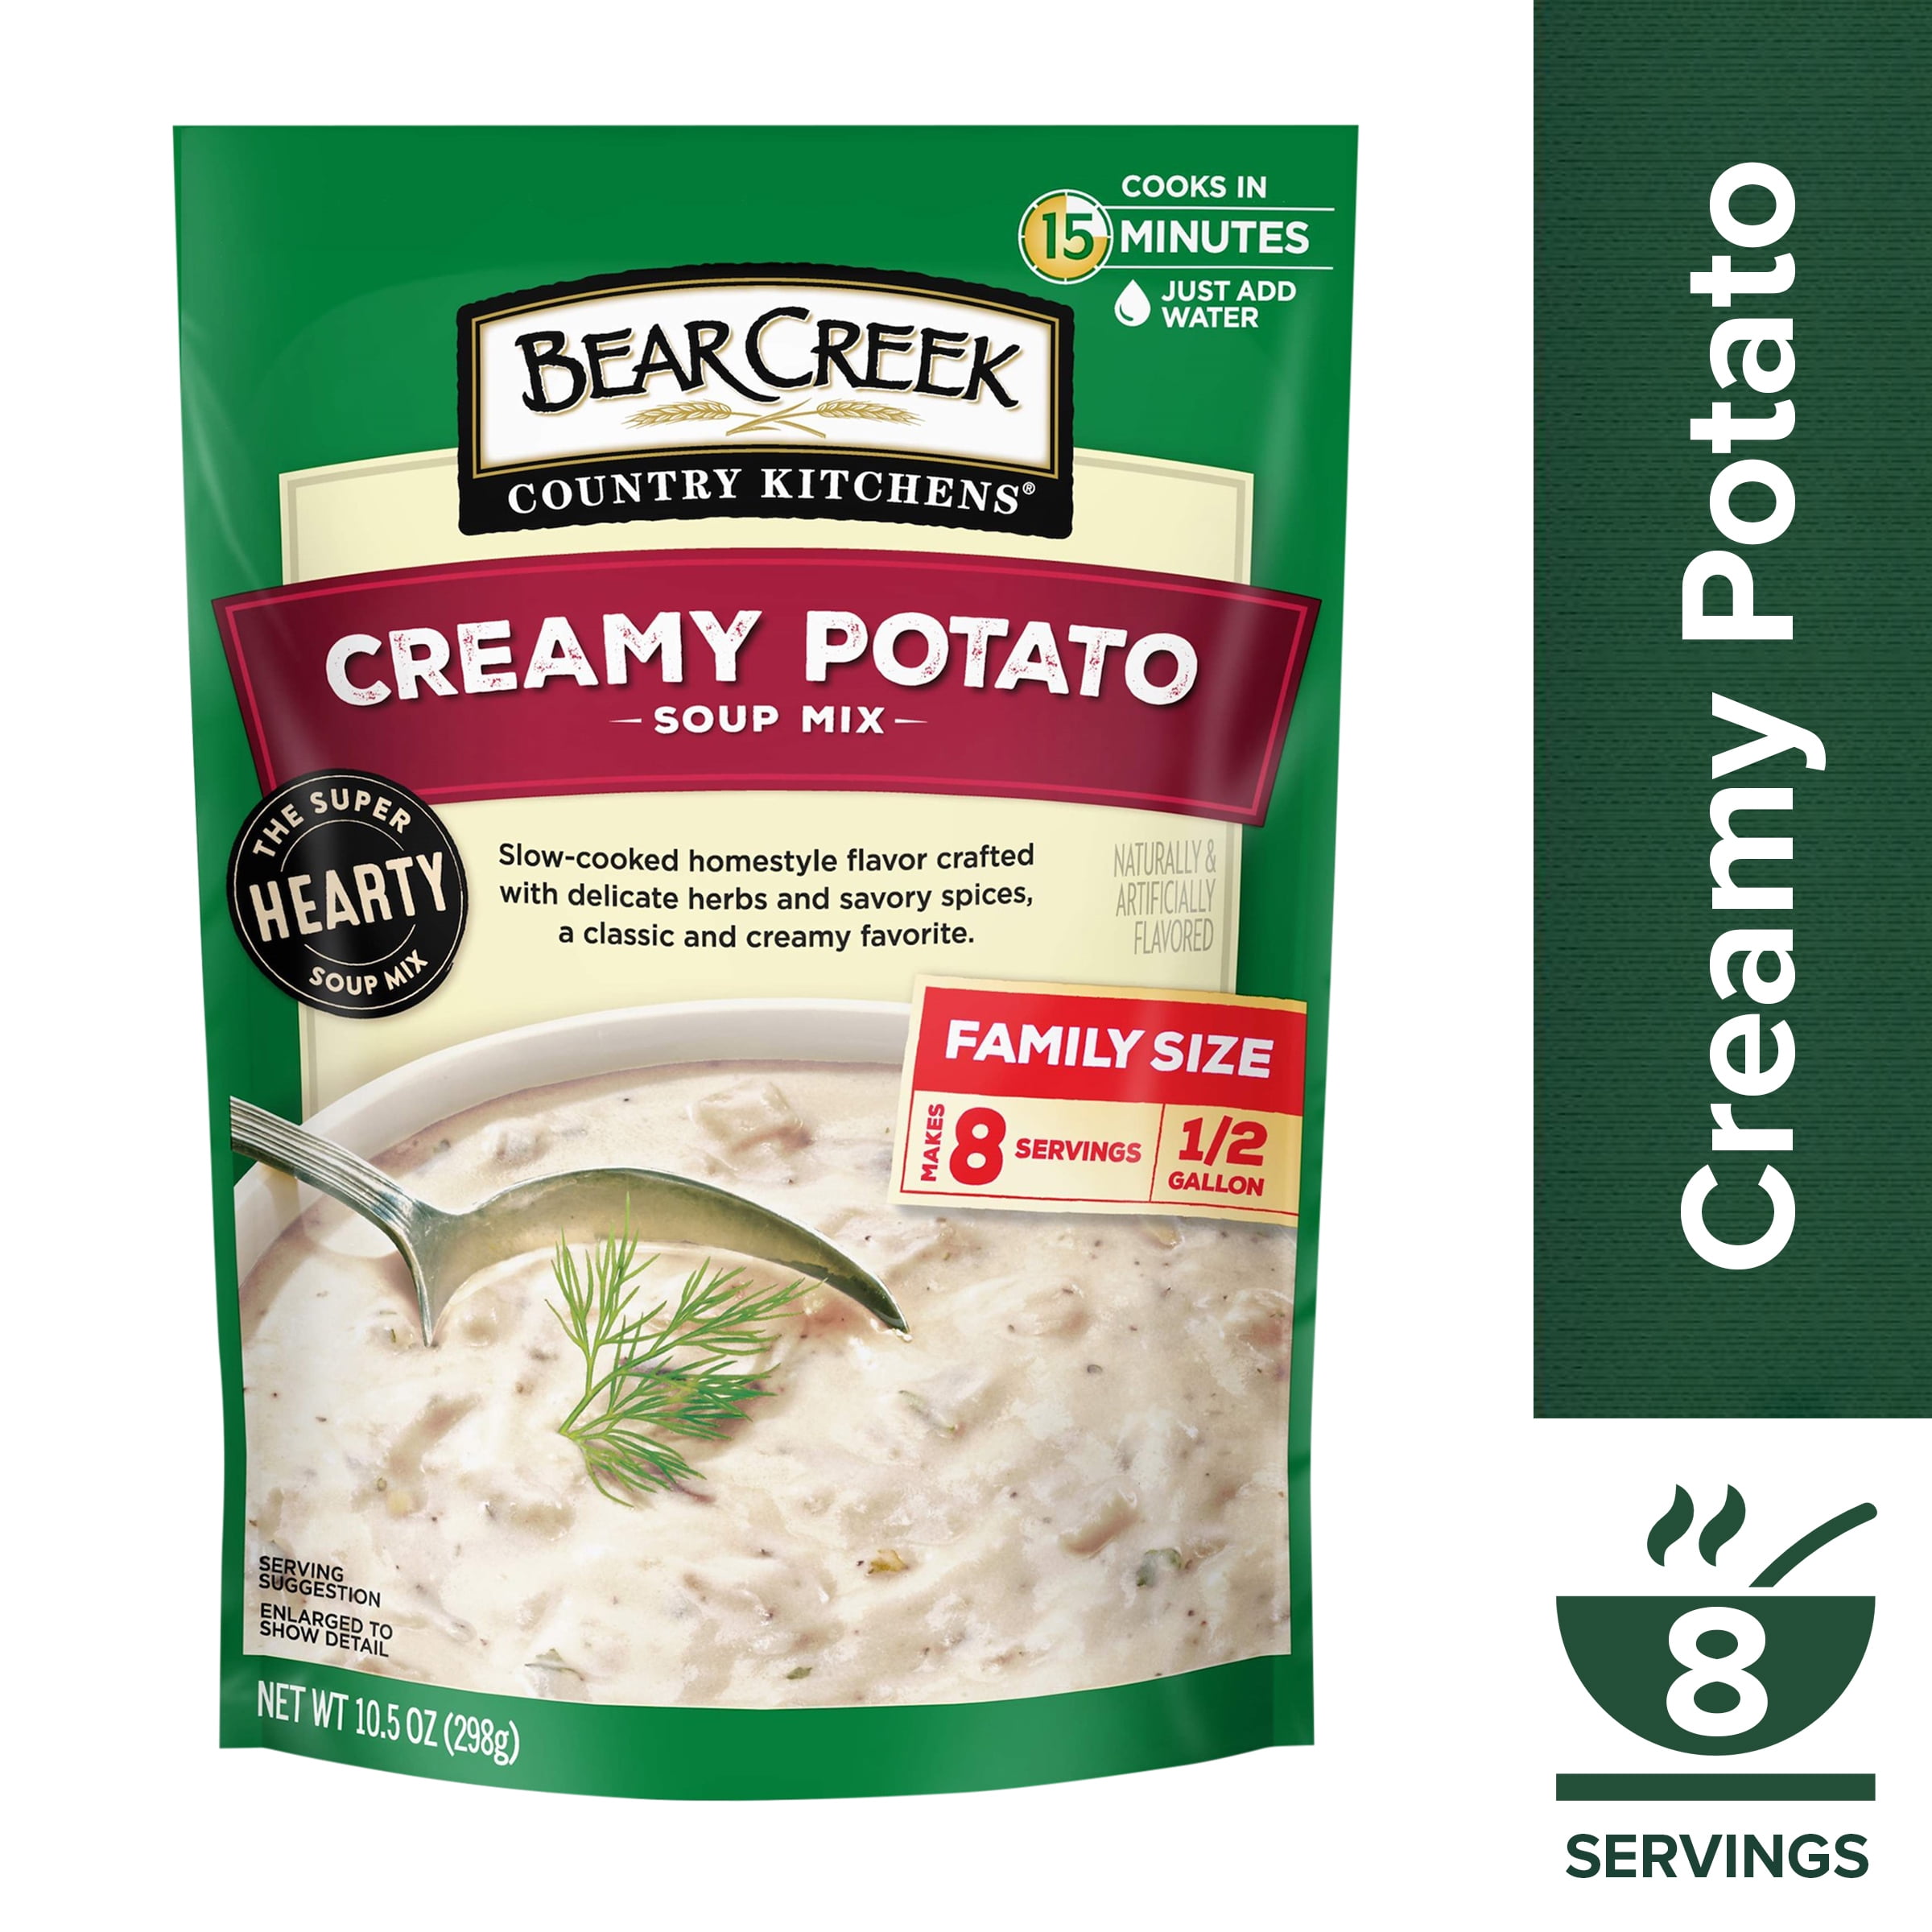 Bear Creek Country Kitchens Creamy Potato Soup Mix, 10.5 OZ Pouch